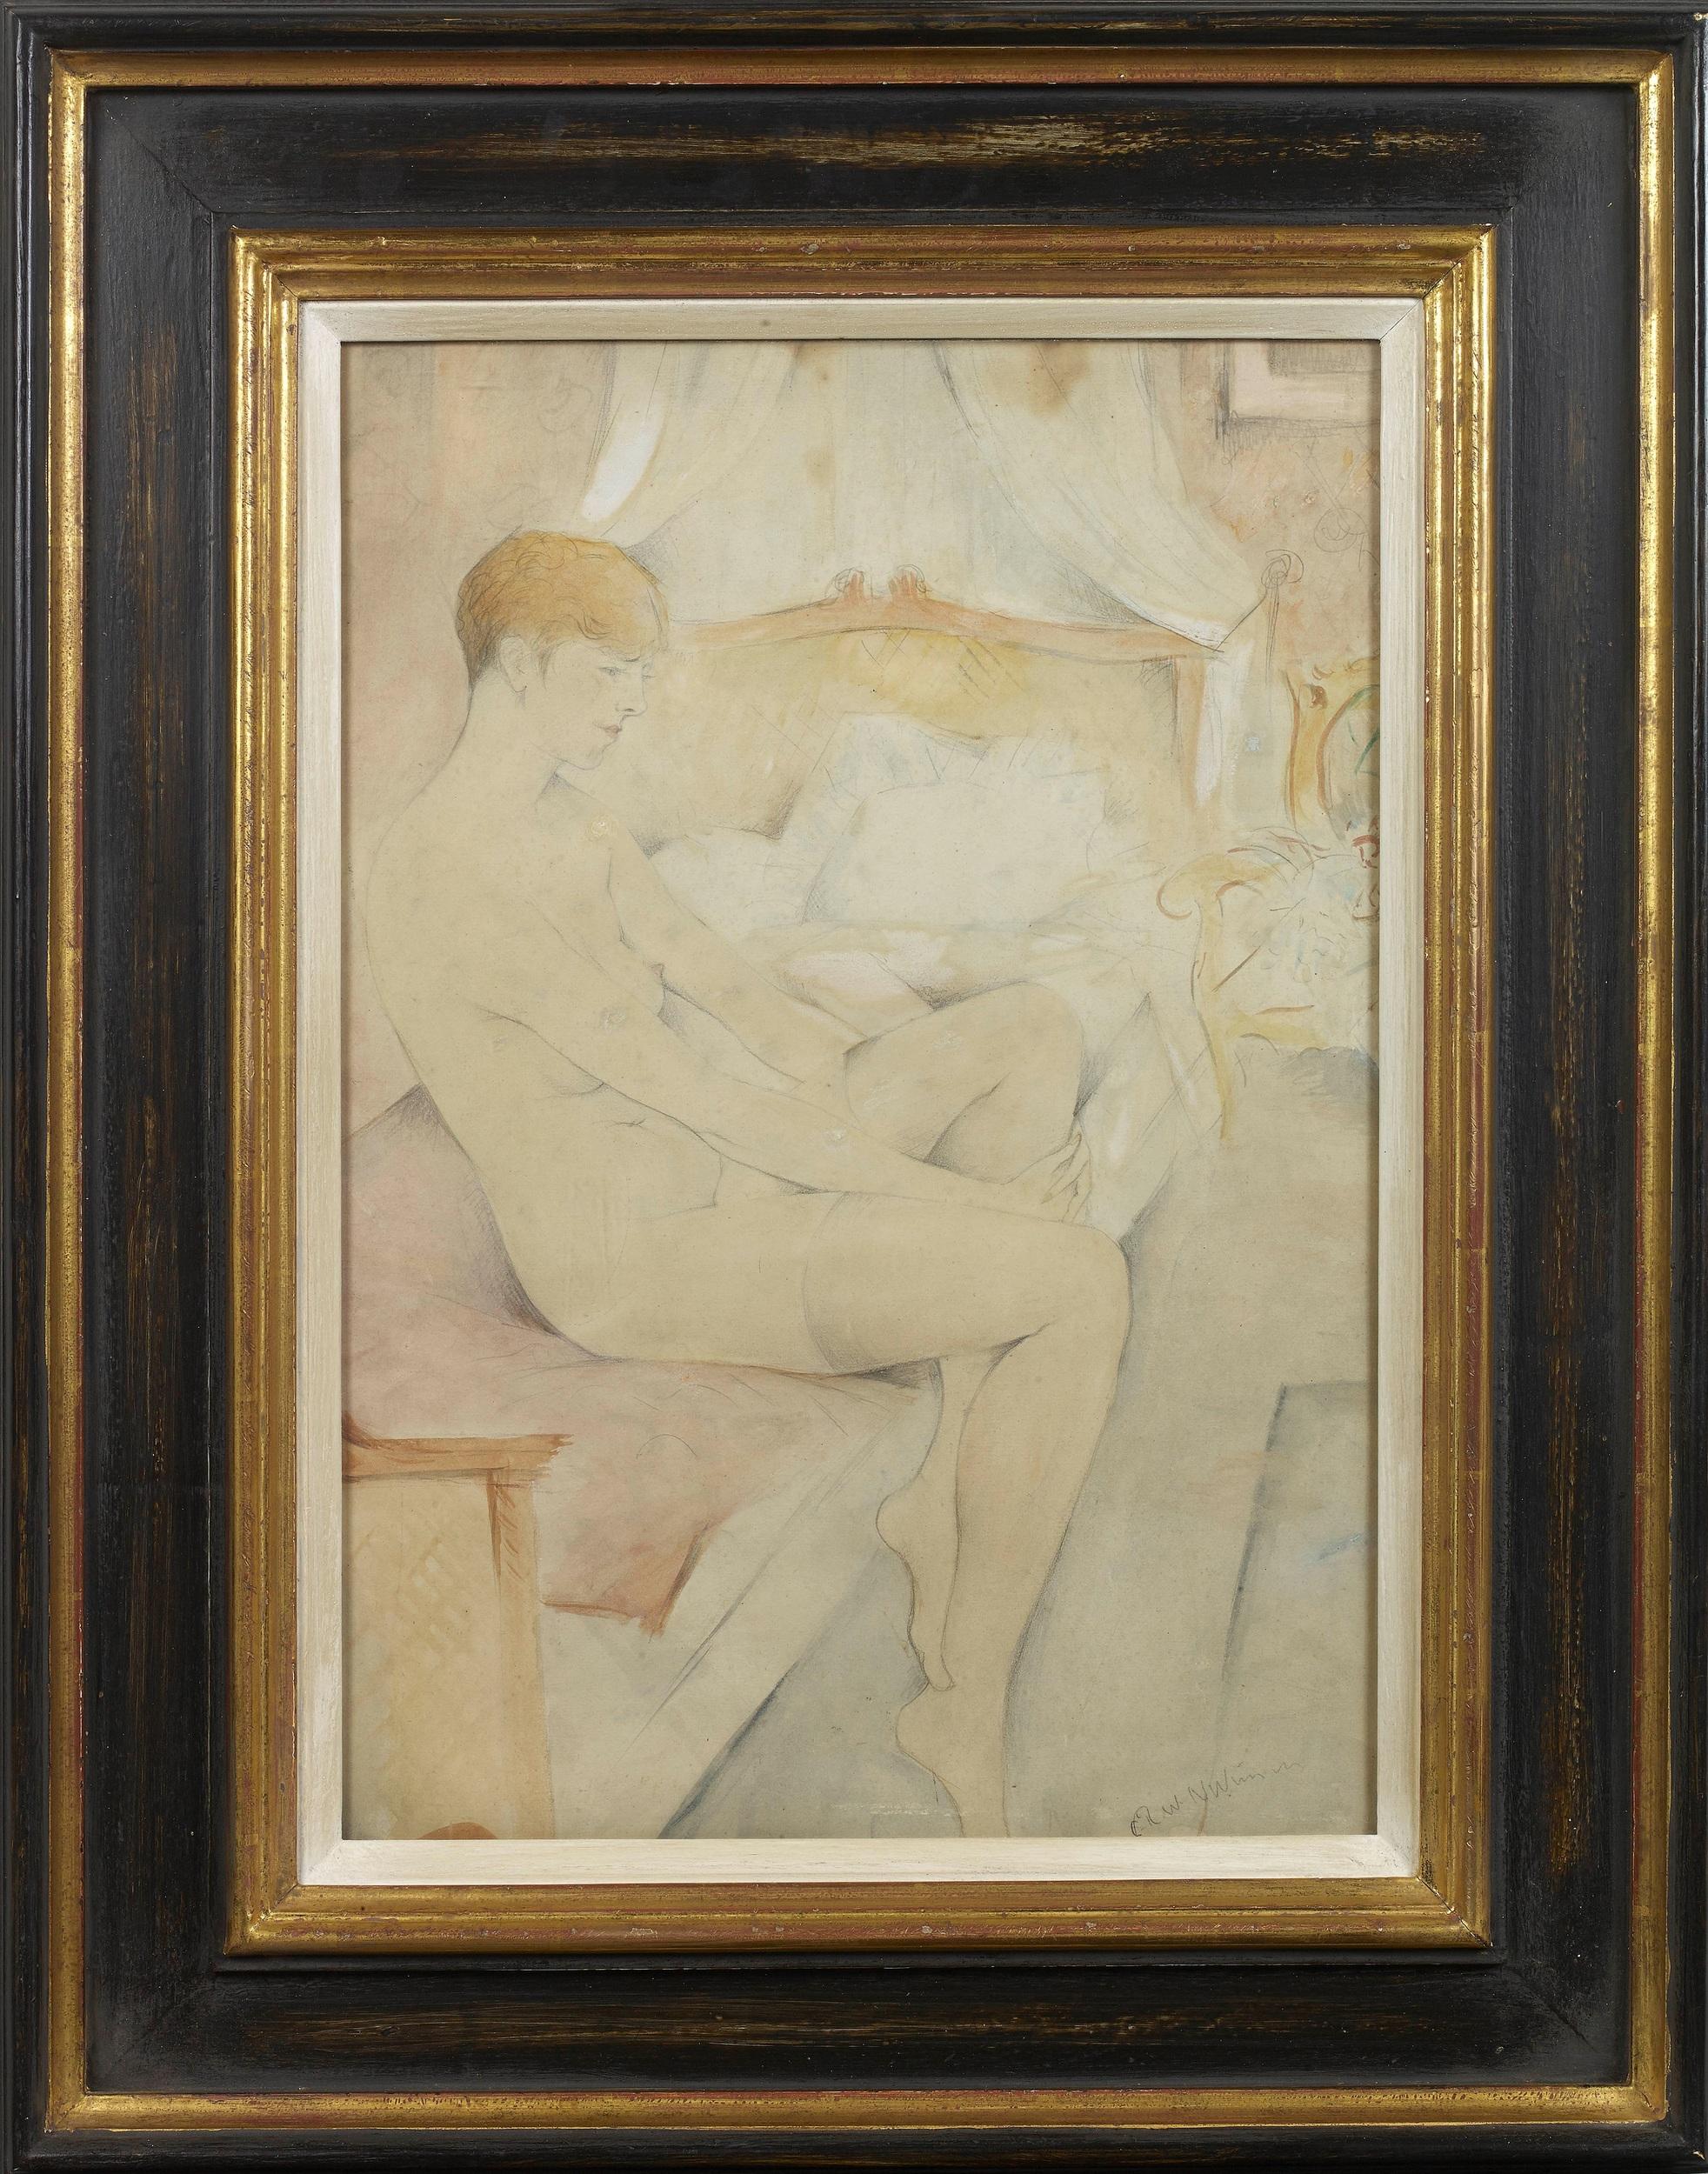 CHRISTOPHER RICHARD WYNNE NEVINSON Nude Painting - Nude Study in a Bedroom by Christopher Richard Wynne Nevinson ARA (1889-1946)